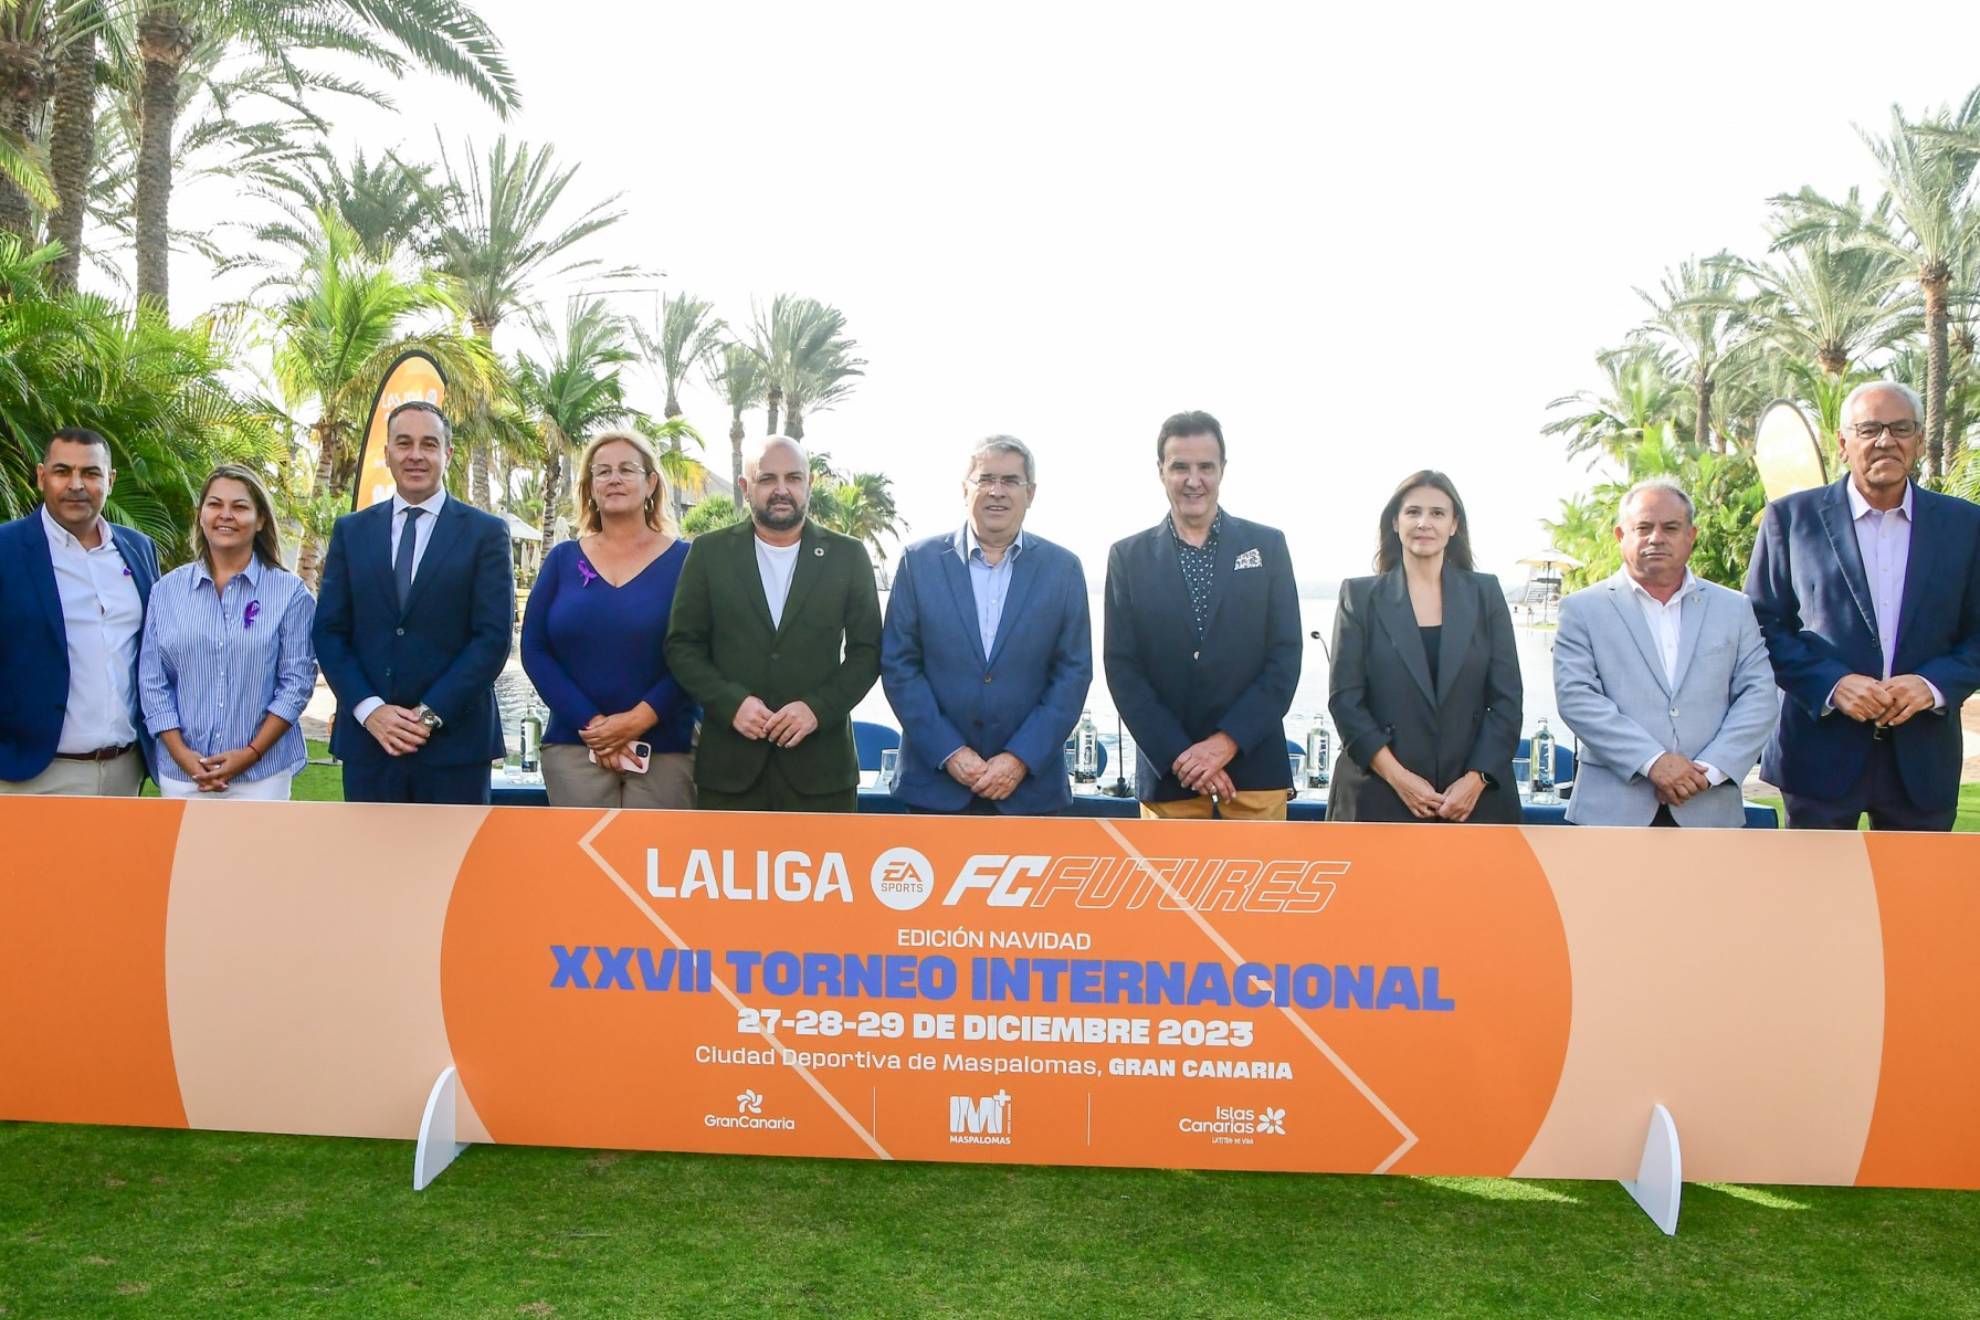 El torneo internacional LaLiga FC Futures regresa a Gran Canaria